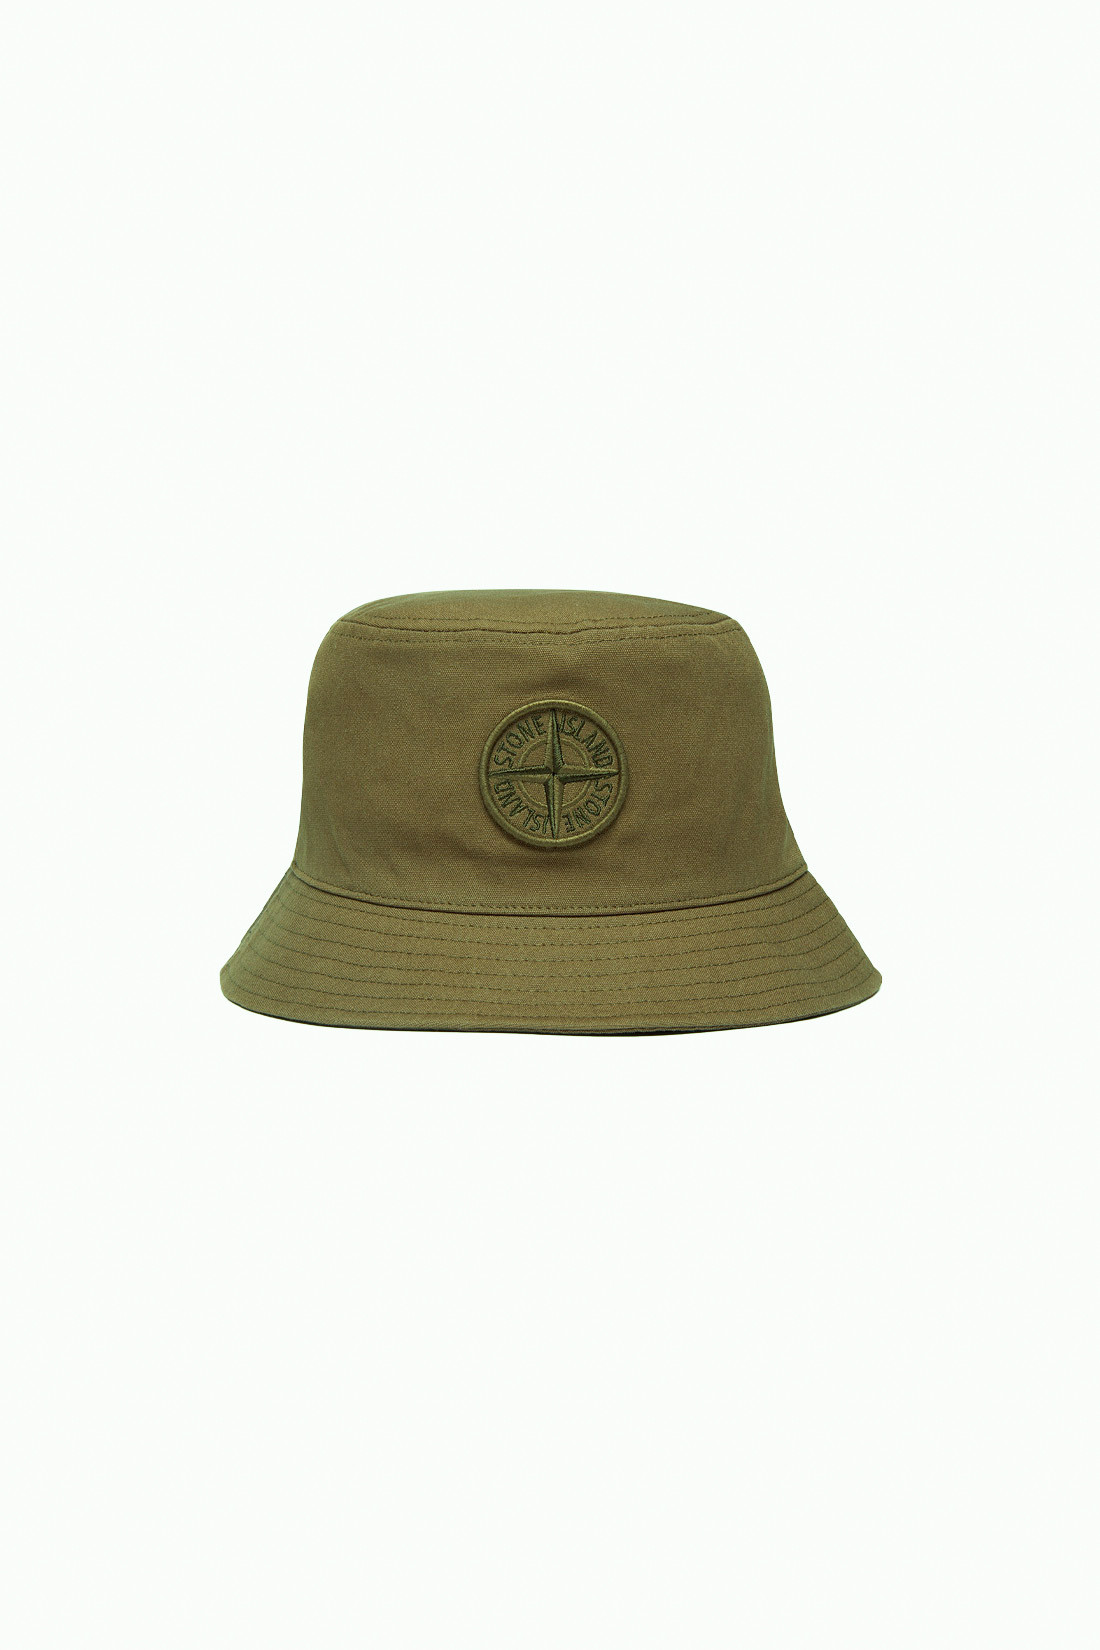 99461 bucket hat v0054 Verde militare